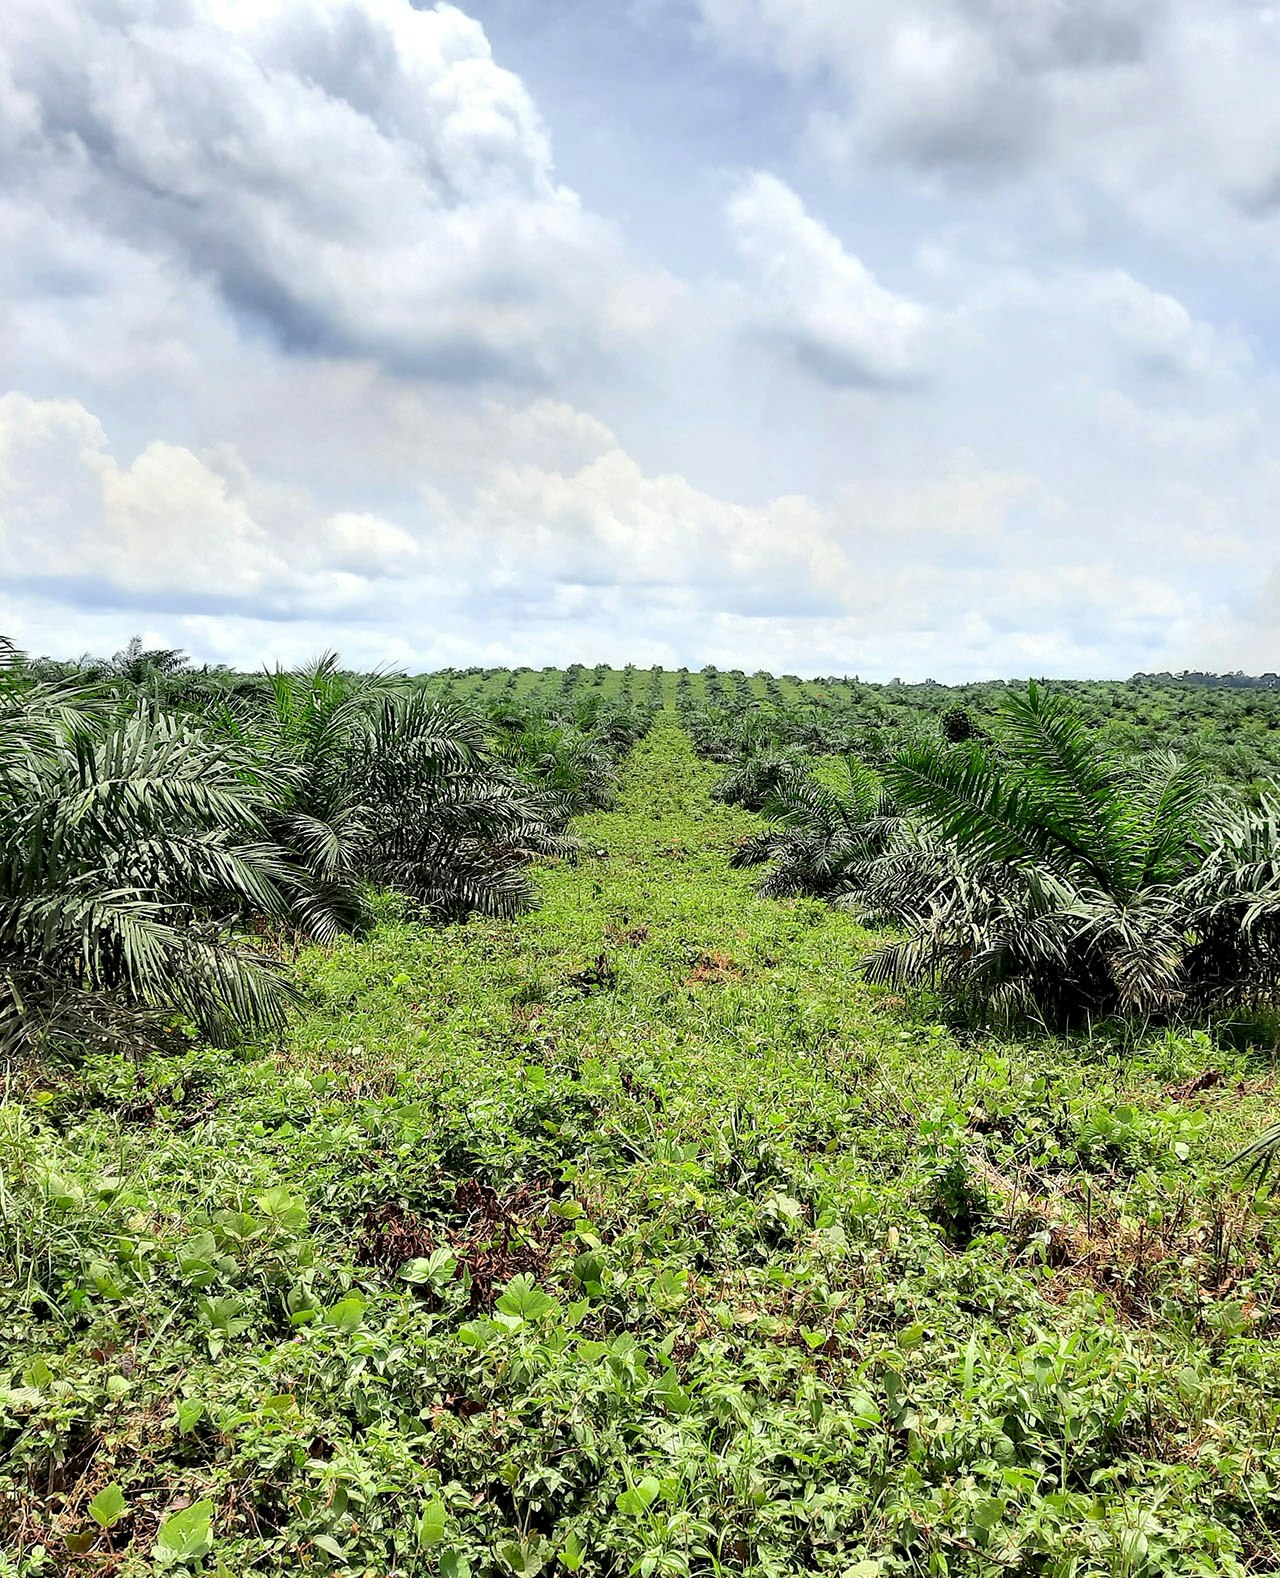 De palmolieplantage van Golden Veroleum nabij Butaw. De plantage oogt groen, maar ecologisch gezien is het een woestijn.